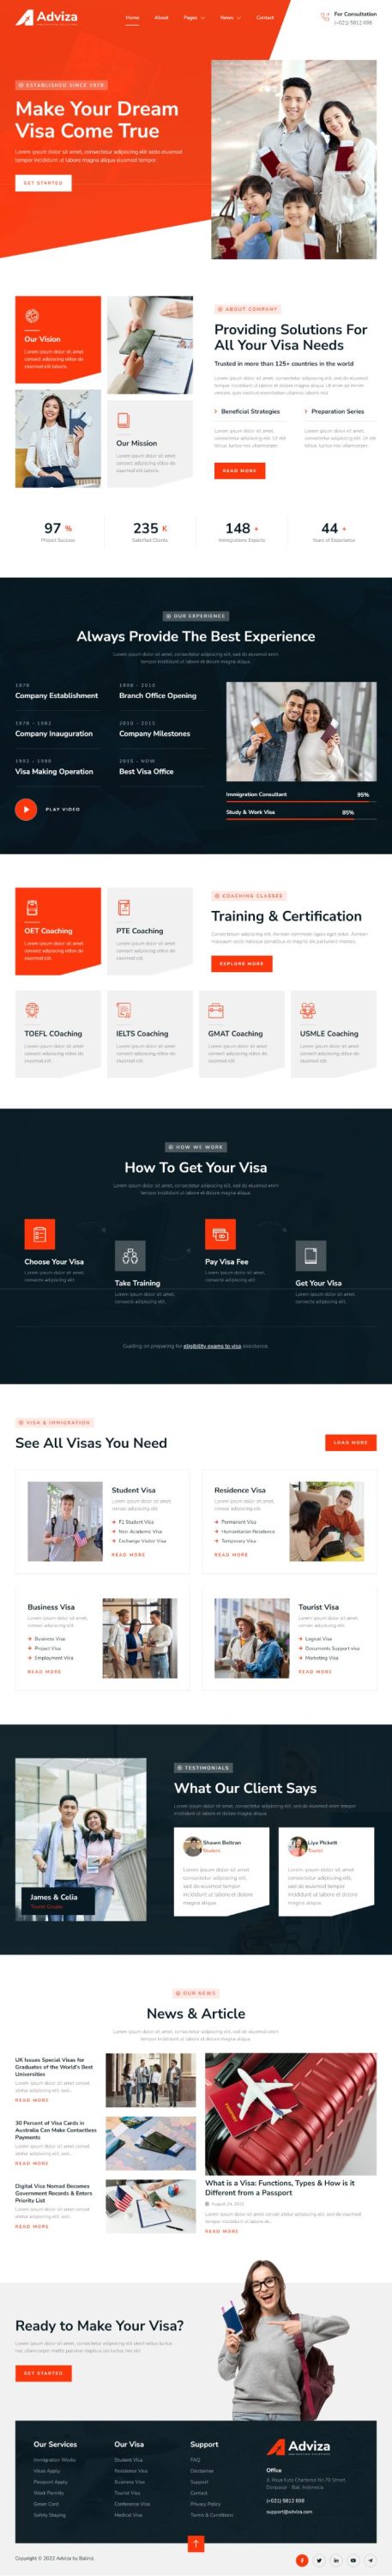 Mẫu website dịch vụ định cư visa - Adviza